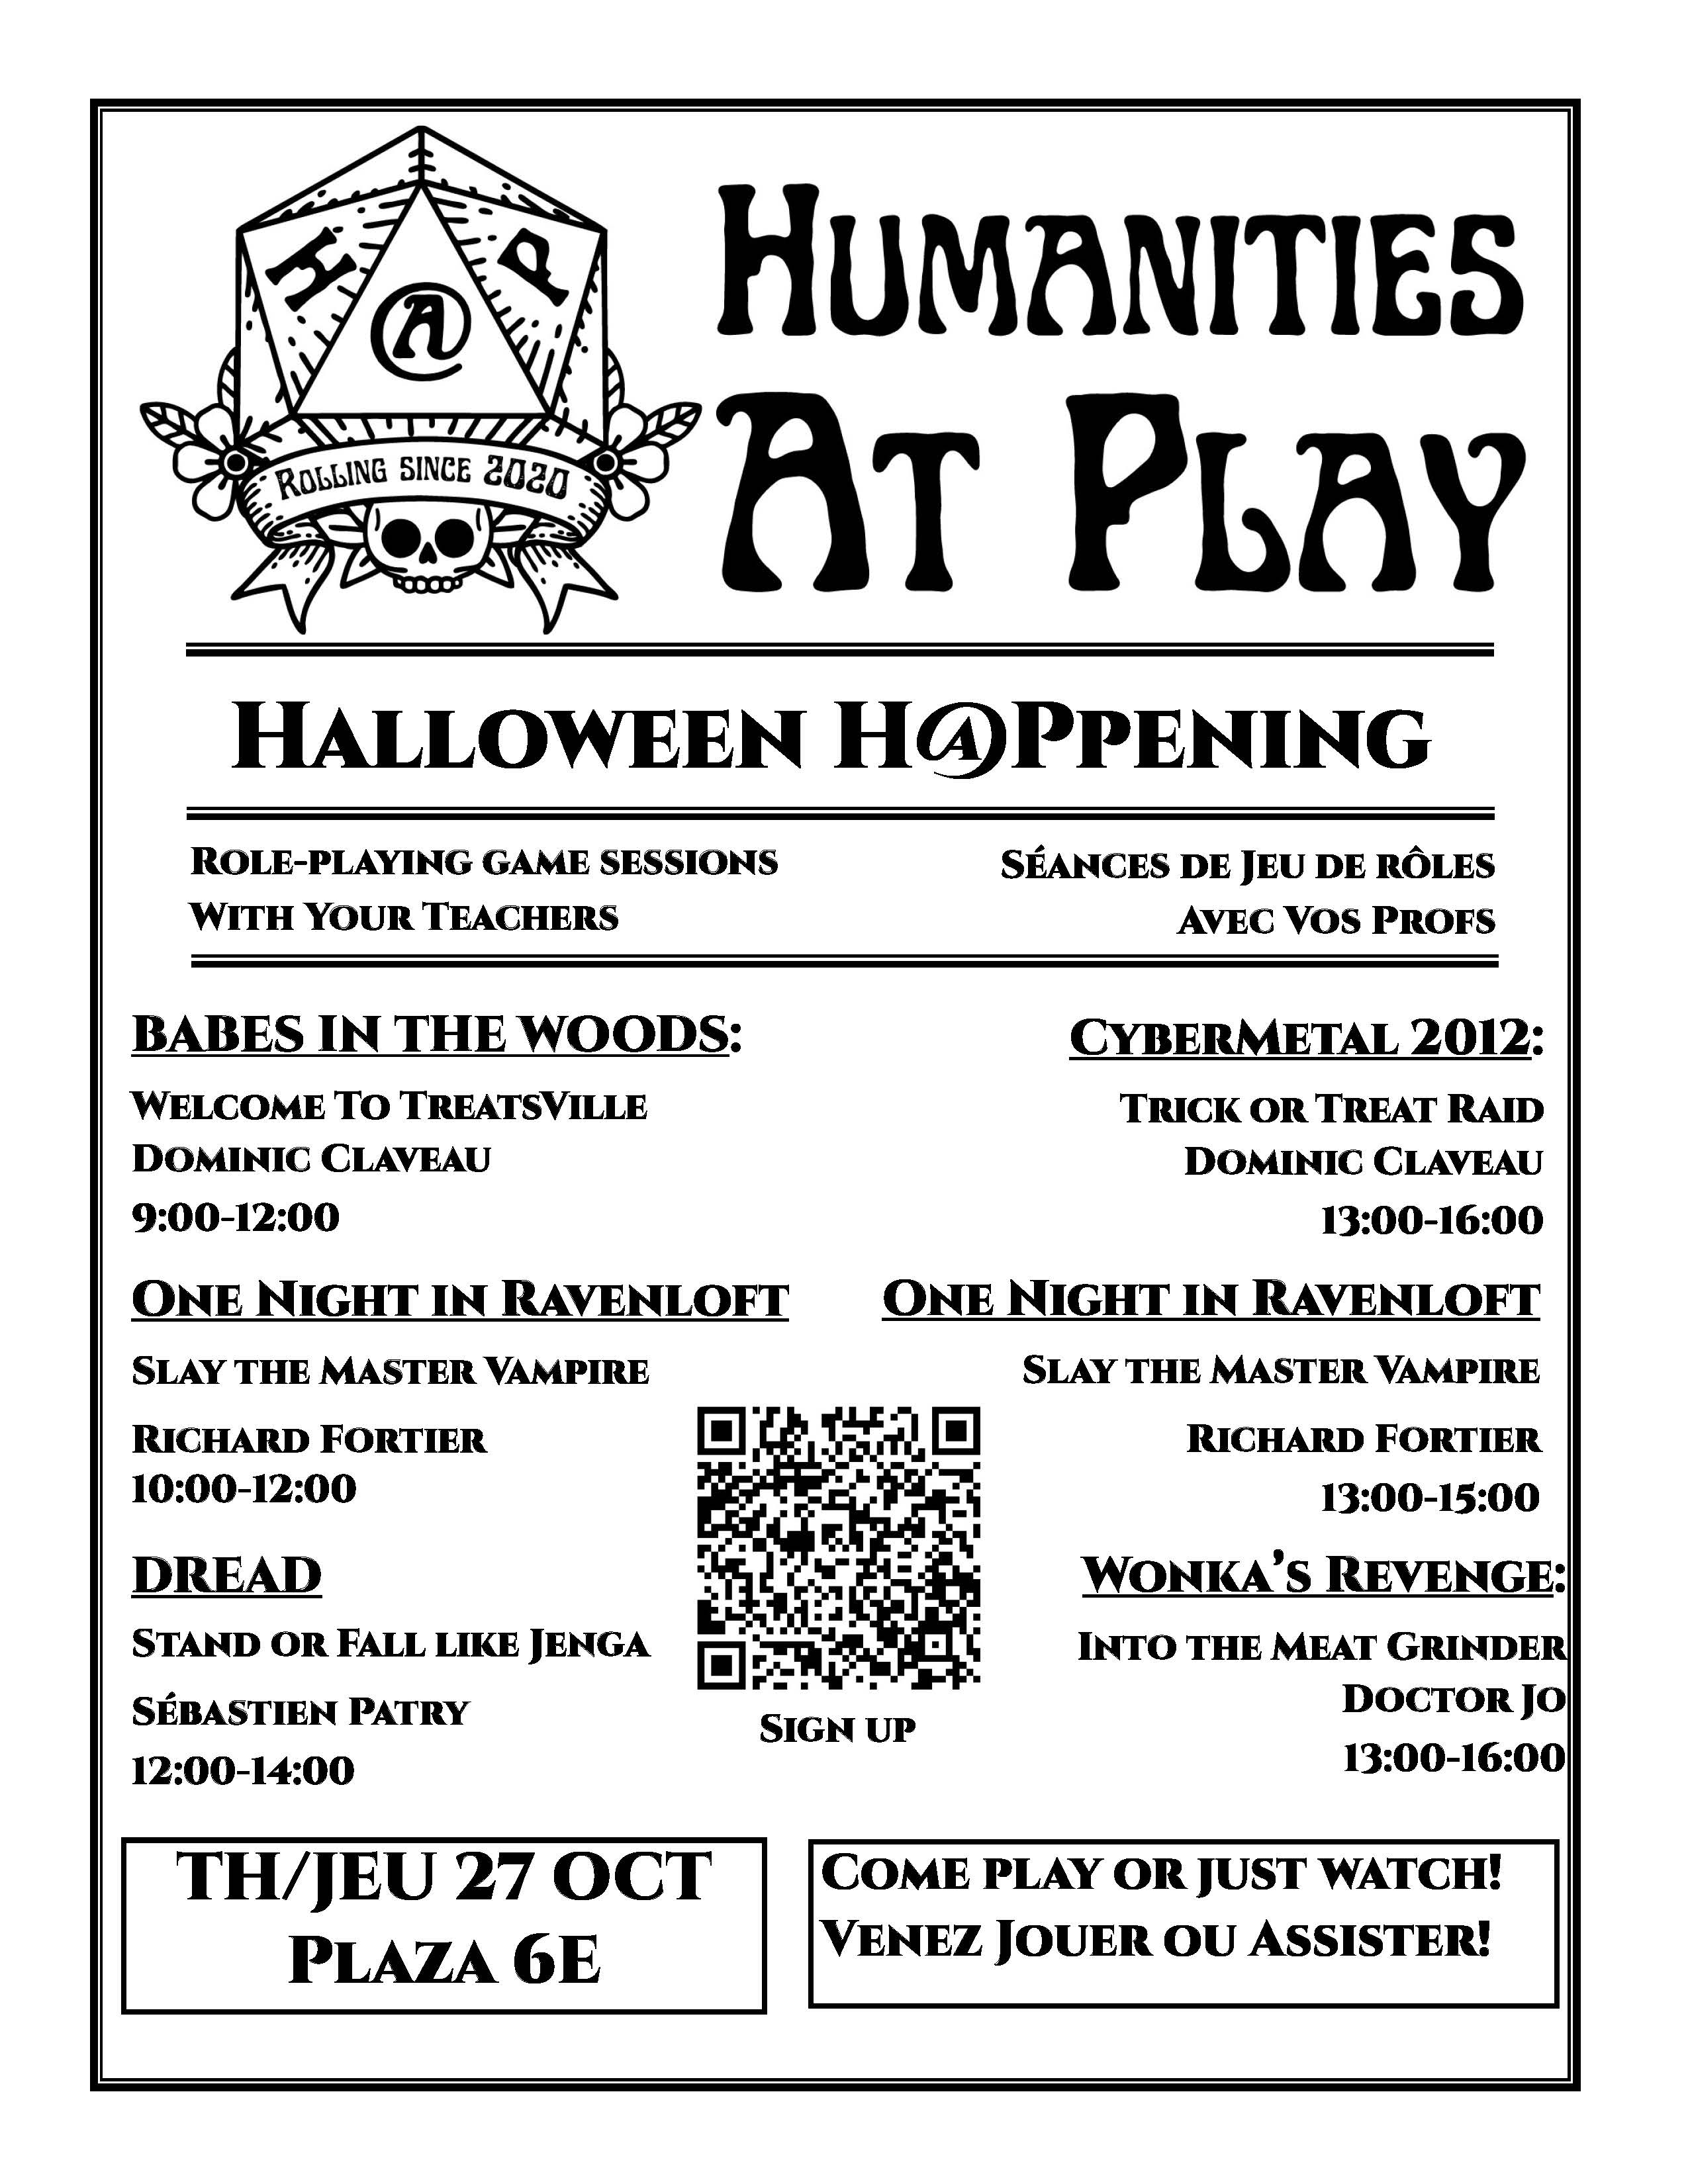 Programme de l'événement Halloween organisé par le Département des Humanités le 27 octobre, incluant des jeux de rôle et des sessions interactives.